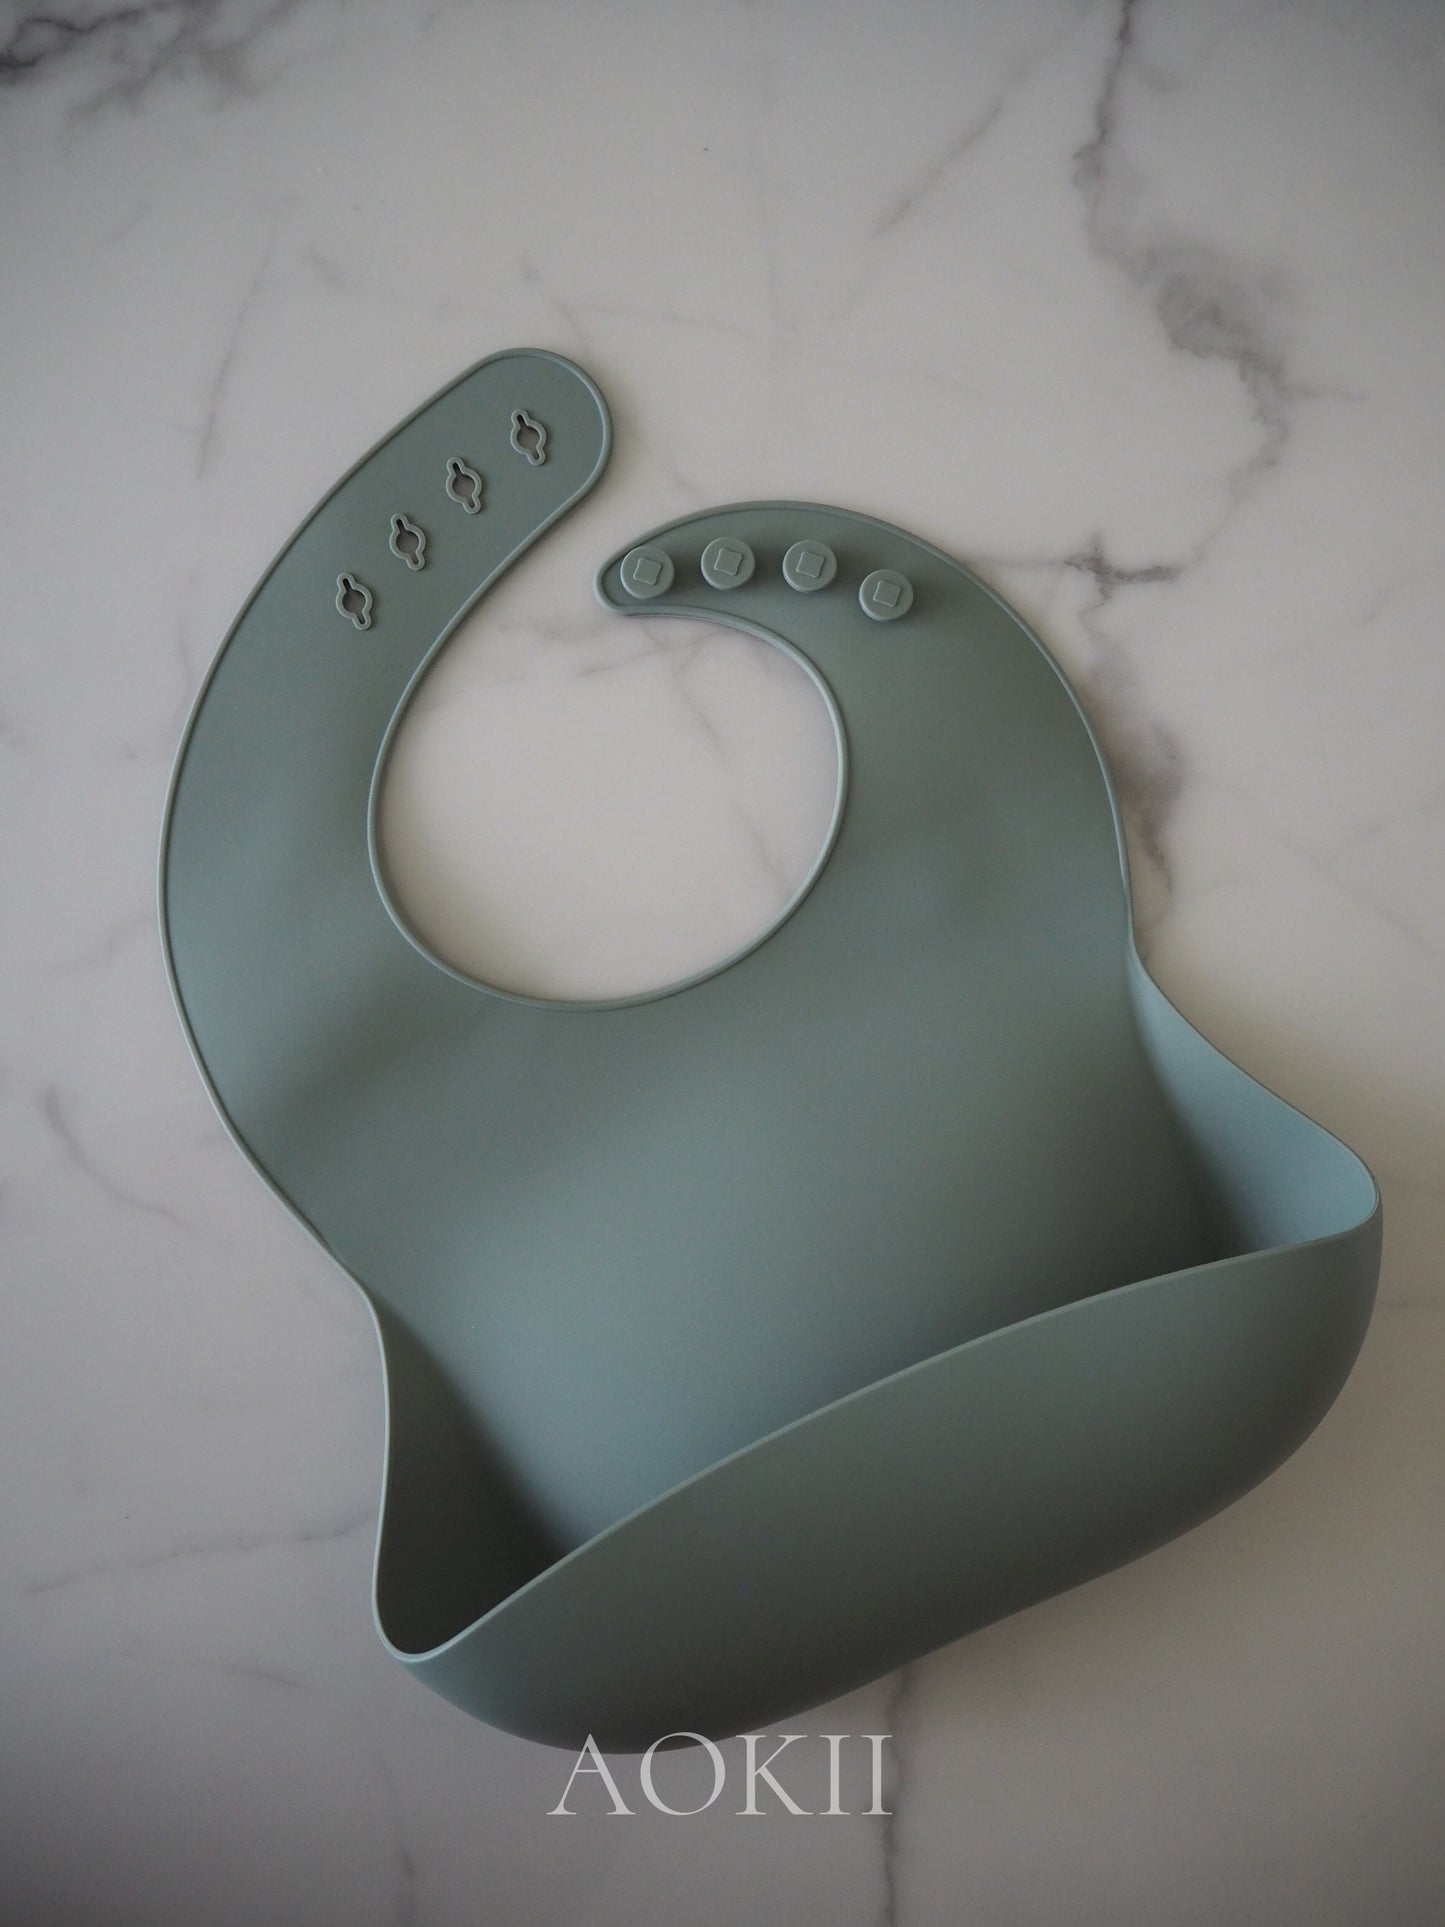 Food-grade silicone baby feeding bib, BPA-free and PVC-free